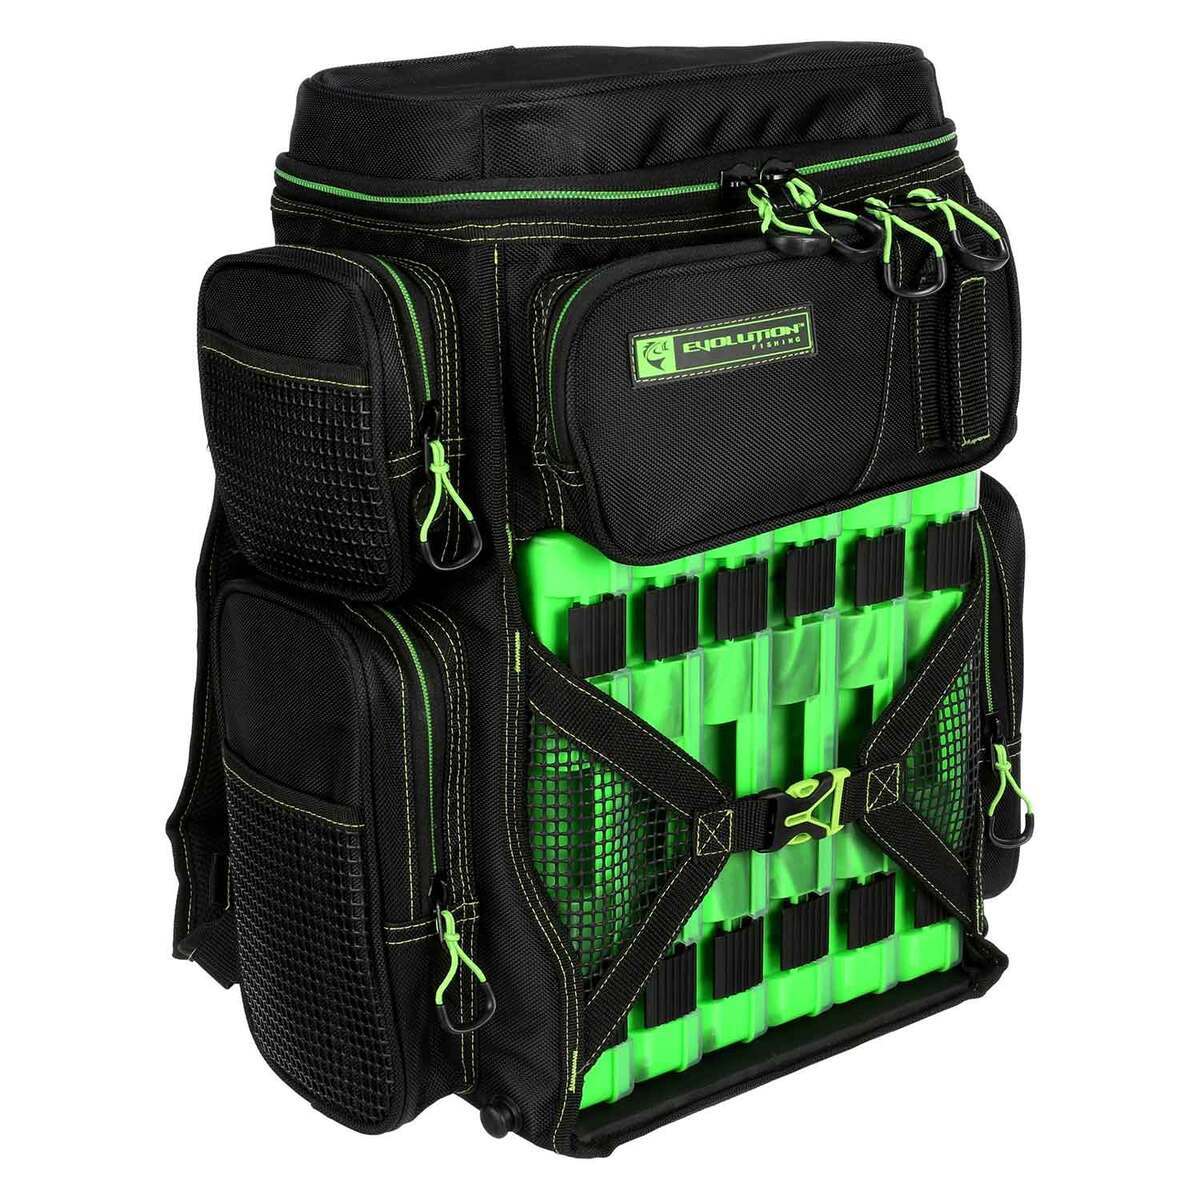 https://www.sportsmans.com/medias/evolution-outdoor-drift-series-tackle-backpack-green-size-3600-1774715-1.jpg?context=bWFzdGVyfGltYWdlc3wxNzA1OTB8aW1hZ2UvanBlZ3xhRFJrTDJoaE5TOHhNRGd6T0RVME9UVTVOREUwTWk4eE56YzBOekUxTFRGZlltRnpaUzFqYjI1MlpYSnphVzl1Um05eWJXRjBYekV5TURBdFkyOXVkbVZ5YzJsdmJrWnZjbTFoZEF8Mzk3Mjc5Mjk5OTVhNzkzNjg2MDRhMjg0ZGVlMDFiNWZhZjQ0NzNkYTkyZDNhYWRmNzYyYzAzNmEwY2NlNDZiOA